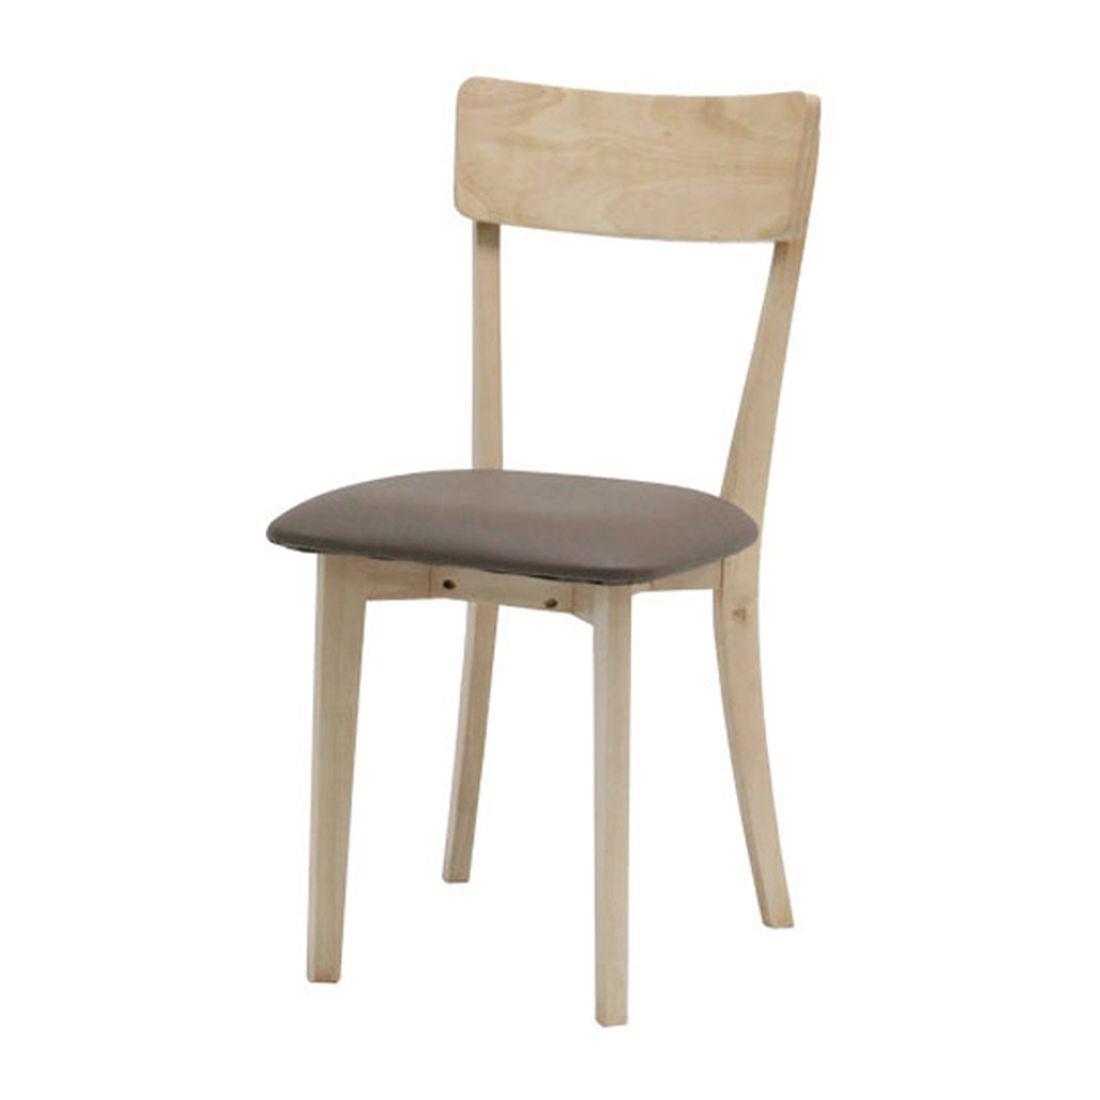 เก้าอี้ทานอาหาร เก้าอี้ไม้เบาะหนัง รุ่น Tersely-SB Design Square